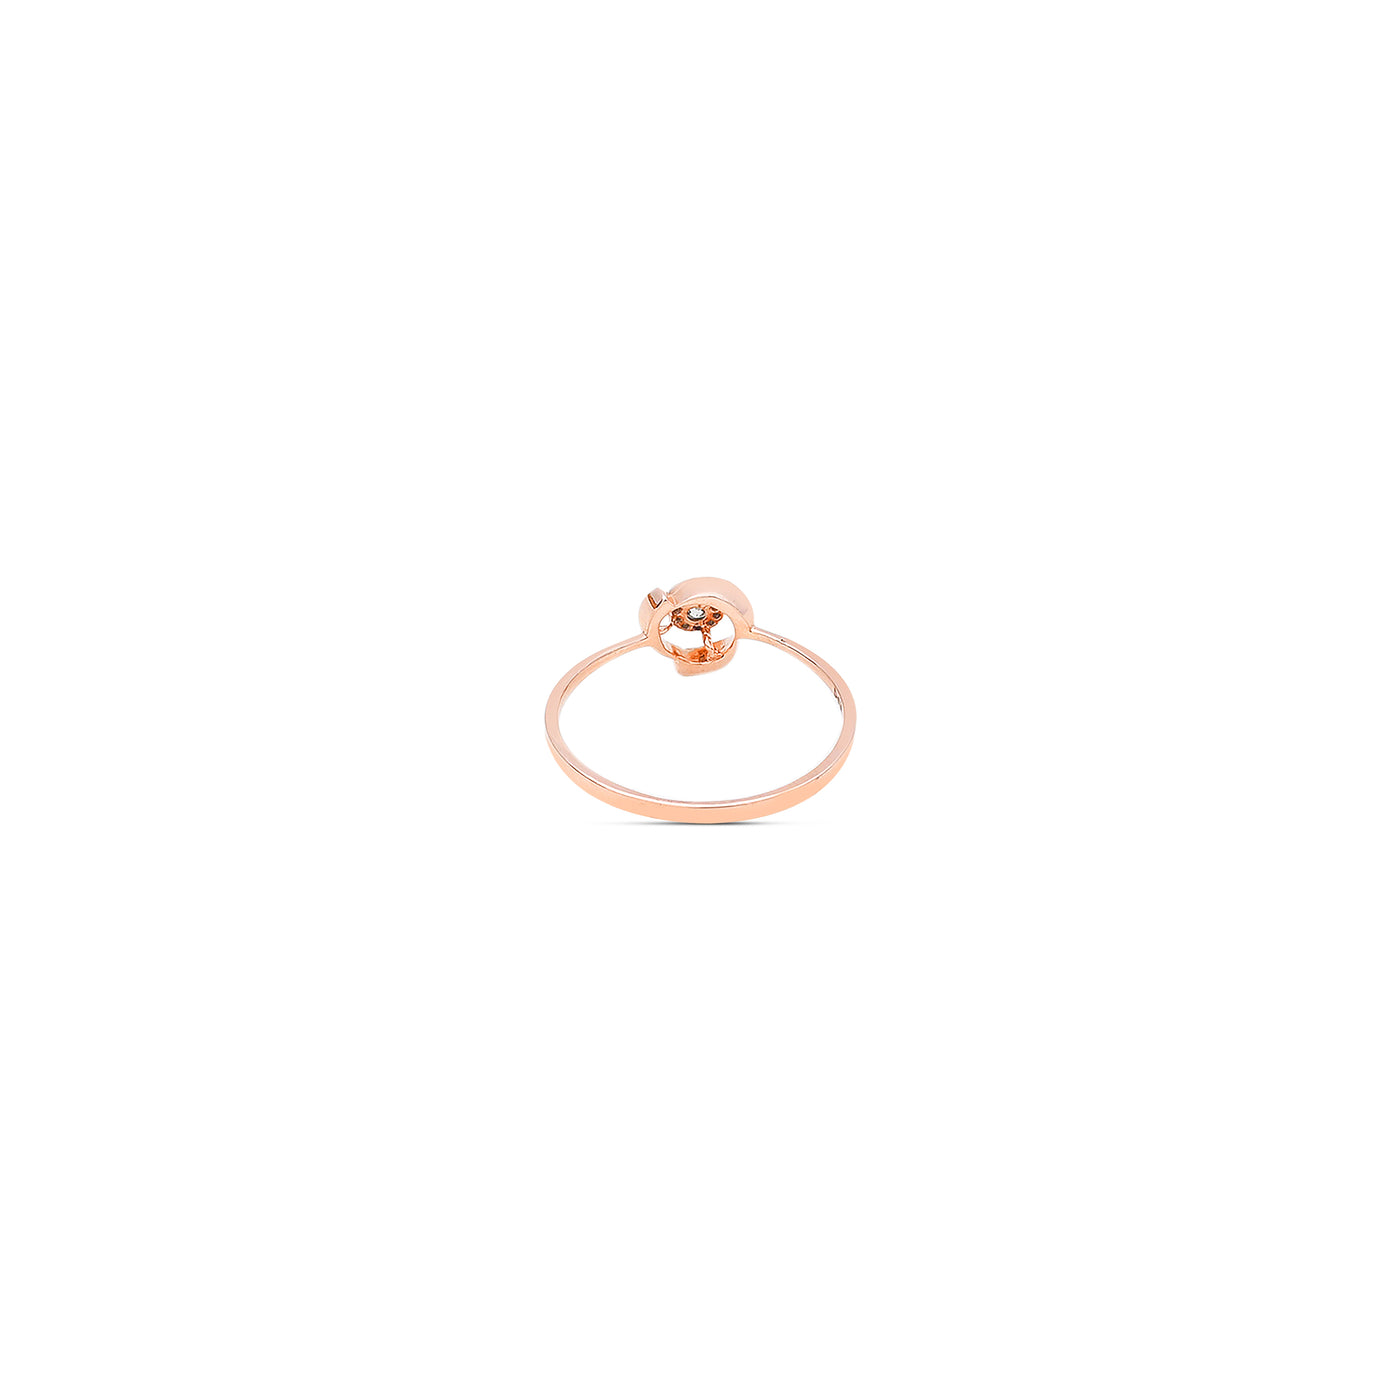 The Myra Diamond Ring